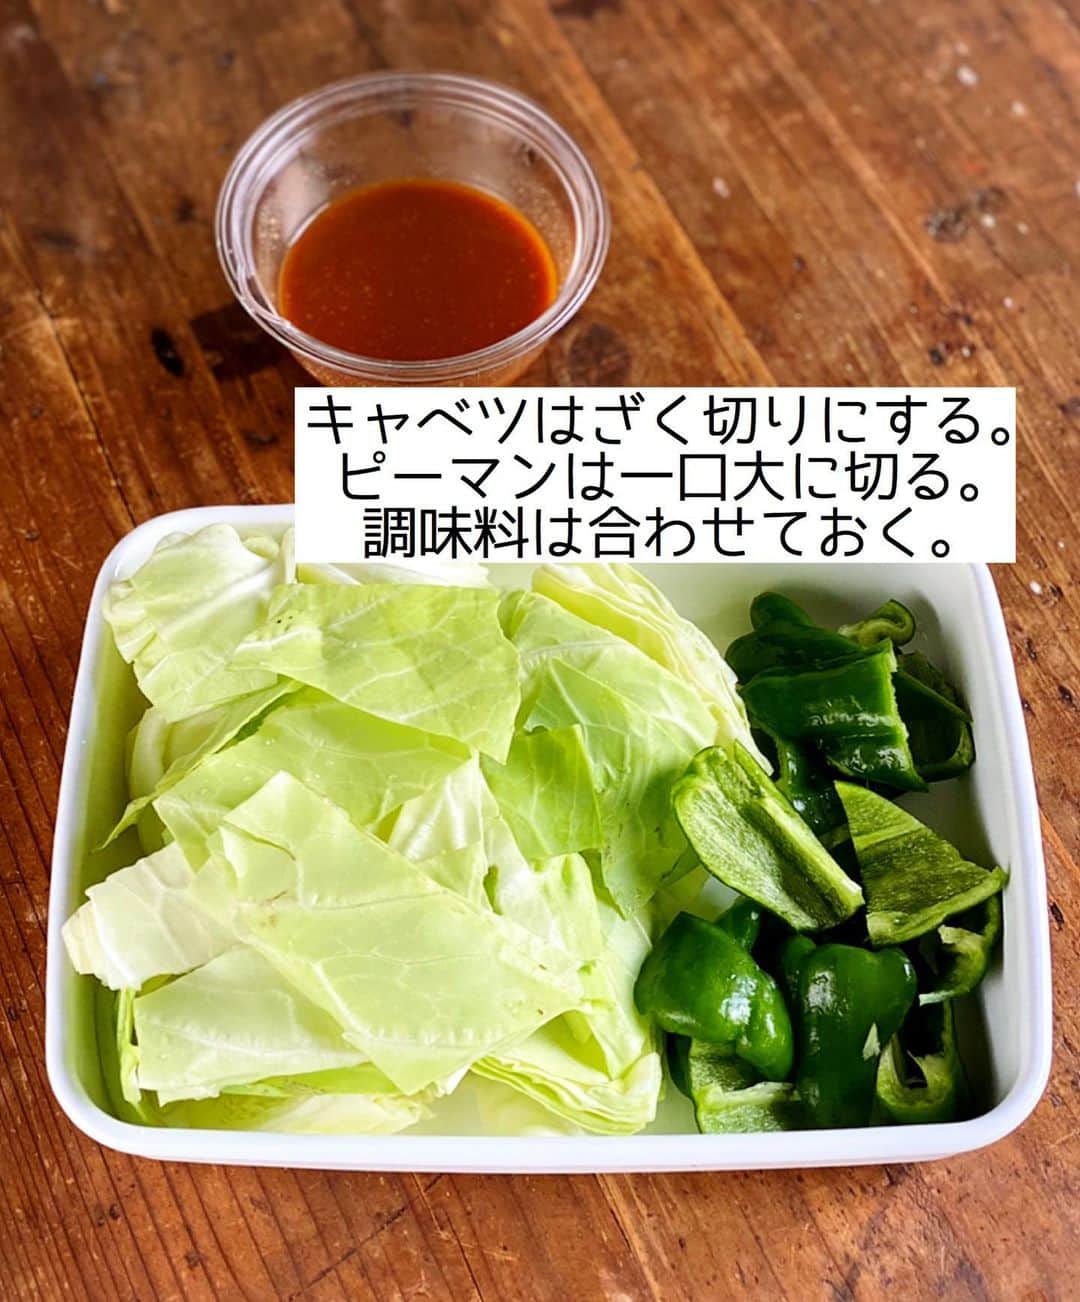 Mizuki【料理ブロガー・簡単レシピ】さんのインスタグラム写真 - (Mizuki【料理ブロガー・簡単レシピ】Instagram)「・﻿ 【#レシピ 】ーーーーーー﻿ ♡ひき肉de回鍋肉風♡﻿ (2品献立提案あり)﻿ ーーーーーーーーーーーー﻿ ﻿ ﻿ ﻿ おはようございます(*^^*)﻿ ﻿ 今日ご紹介させていただくのは﻿ ささっとできる炒め物♩﻿ お手軽なひき肉と野菜を﻿ 回鍋肉風の甘辛味噌で味付けしました♡﻿ 特別な材料要らずで﻿ あっという間に作れますよ〜！！﻿ ﻿ ひき肉がポロポロせずに食べやすく﻿ がっつりごはんがすすみます(*´艸`)﻿ コスパも抜群なので﻿ お気軽にお試し下さいね(*^^*)﻿ ﻿ ﻿ ﻿ ＿＿＿＿＿＿＿＿＿＿＿＿＿＿＿＿＿＿＿＿﻿ 【2人分】﻿ 合いびき肉...200g﻿ キャベツ...1/5個(250g)﻿ ピーマン...2個﻿ ごま油...小2﻿ ●水...大2﻿ ●味噌・酒・醤油・砂糖...各大1﻿ ●片栗粉...小1﻿ ●にんにくチューブ...2cm﻿ ﻿ 1.キャベツはざく切りにする。ピーマンは一口大に切る。●は合わせておく。﻿ 2.フライパンにごま油を中火で熱してひき肉を炒め、火が通ったらキャベツとピーマンも加えて更に炒める。﻿ 3.野菜がしんなりしたら●を加えて炒め合わせる。﻿ ￣￣￣￣￣￣￣￣￣￣￣￣￣￣￣￣￣￣￣￣﻿ ﻿ ﻿ ﻿ 《ポイント》﻿ ♦︎豚ひき肉で作っても♩﻿ ♦︎好みで豆板醤(小1/2〜)を加えても美味しいです♩﻿ ﻿ ﻿ ﻿ ﻿ ﻿ ﻿ ﻿ ＿＿＿＿＿＿＿＿＿＿＿＿＿＿＿＿﻿ 🥣🥣🥣 2品献立提案 🥣🥣🥣﻿ ￣￣￣￣￣￣￣￣￣￣￣￣￣￣￣￣﻿ 【合間に作れるおすすめ副菜】﻿ >しめじと厚揚げの煮物(P.33)﻿ >にんじんマカロニサラダ(P.89)﻿ (#Mizukiの2品献立 より)﻿ ﻿ 【献立の段取り】﻿ 副菜をレンジに入れてから﻿ メインを炒める🥢﻿ ￣￣￣￣￣￣￣￣￣￣￣￣￣￣￣￣﻿ ﻿ ﻿ ﻿ ﻿ ﻿ ⭐️発売中⭐️3刷重版が決まりました😭﻿ 本当にありがとうございます(涙)﻿ _____________________________________﻿ \15分でいただきます/﻿ 📕#Mizukiの2品献立 📕﻿ (9月24日発売・マガジンハウス)﻿ ￣￣￣￣￣￣￣￣￣￣￣￣￣￣￣￣￣﻿ ﻿ 忙しい私たちには﻿ 2品くらいがちょうどいい！﻿ 『しんどくない献立、考えました』﻿ ￣￣￣￣￣￣￣￣￣￣￣￣￣￣￣￣﻿ ﻿ ーーーーーPART.1 ーーーーー﻿ 【Mizukiのお墨つき！２品献立ベスト10】﻿ 約15分でできる10献立をご紹介！﻿ メインは全部フライパン﻿ 副菜はレンチンor混ぜるだけ♡﻿ ﻿ ーーーーーPART.2 ーーーーー﻿ 【フライパンひとつ！今夜のメインおかず】﻿ 献立の主役になる肉や魚のおかず50品！﻿ Part3の副菜と組み合わせれば﻿ 献立のバリエーションが広がりますよ♩﻿ ﻿ ーーーーー PART.3 ーーーーー﻿ 【合間に作れる！ 野菜別かんたん副菜】﻿ レンチンor和えるだけの副菜レシピを﻿ 素材別にたっぷり収録♩﻿ ﻿ ーーーーー番外編ーーーーー﻿ 【ひとつで満足！ご飯＆麺】﻿ 【具だくさん！おかずスープ】﻿ 【オーブンいらずのおやつレシピ】﻿ ￣￣￣￣￣￣￣￣￣￣￣￣￣￣￣￣￣￣﻿ (ハイライトにリンク🔗あります💗)﻿ ﻿ ﻿ ﻿ ﻿ ﻿ ＿＿＿＿＿＿＿＿＿＿＿＿＿＿＿＿＿＿﻿ 🔔テレビ出演のお知らせ🔔﻿ 【NHK Eテレ #まる得マガジン 】﻿ 2回目の放送が始まっています✨﻿ 昼(11：55〜 月-木) ﻿ 夜(21：55〜 月-木)﻿ 俳優の武田航平さん﻿ (@kouhei_takeda.official )と一緒に﻿ 絶品おやつから意外なランチまで﻿ たくさん作らせていただきますよ♩﻿ ﻿ ＊NHKテキスト発売中📕﻿ ￣￣￣￣￣￣￣￣￣￣￣￣￣￣￣￣￣￣﻿ ﻿ ﻿ ﻿ ﻿ ﻿ ＿＿＿＿＿＿＿＿＿＿＿＿＿＿＿＿＿＿﻿ レシピを作って下さった際や﻿ レシピ本についてのご投稿には﻿ タグ付け( @mizuki_31cafe )して﻿ お知らせいただけると嬉しいです😊💕﻿ ￣￣￣￣￣￣￣￣￣￣￣￣￣￣￣￣￣￣﻿ ﻿ ﻿ ﻿ ﻿ #ひき肉#キャベツ#味噌炒め#回鍋肉#Mizuki#簡単レシピ#時短レシピ#節約レシピ#料理#フーディーテーブル#マカロニメイト#おうちごはん#デリスタグラマー#料理好きな人と繋がりたい#食べ物#料理記録#おうちごはんlover#写真好きな人と繋がりたい#foodpic#cooking#recipe#lin_stagrammer#foodporn#yummy#f52grams#ひき肉回鍋肉m」11月24日 7時04分 - mizuki_31cafe